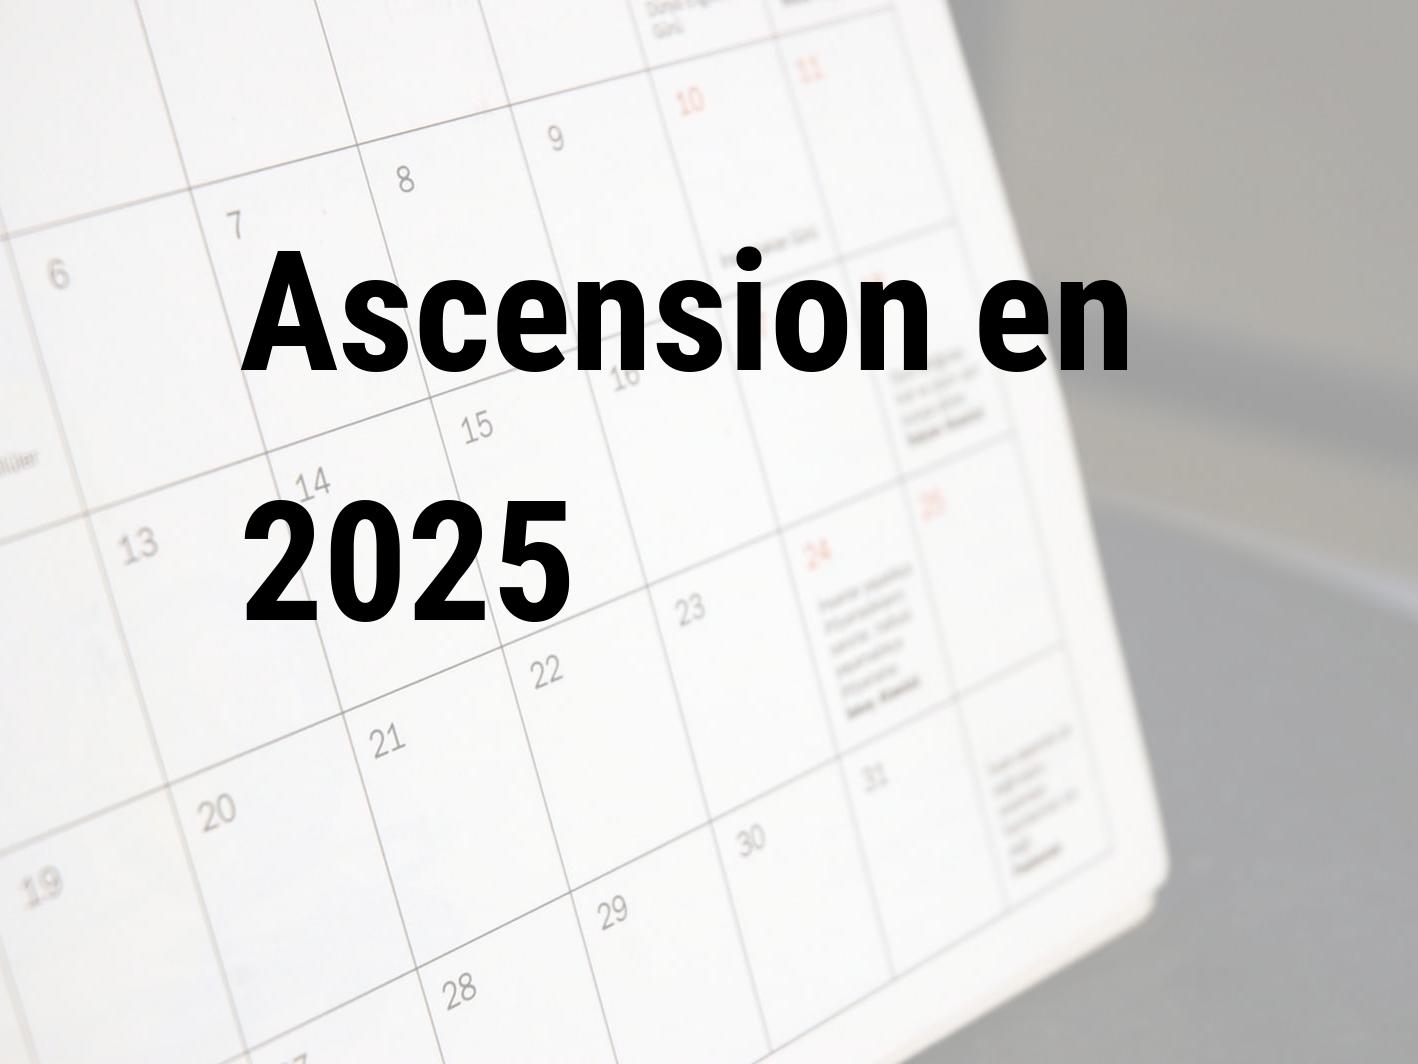 Ascension 2025. Quand est le Ascension en 2025? Calendar Center